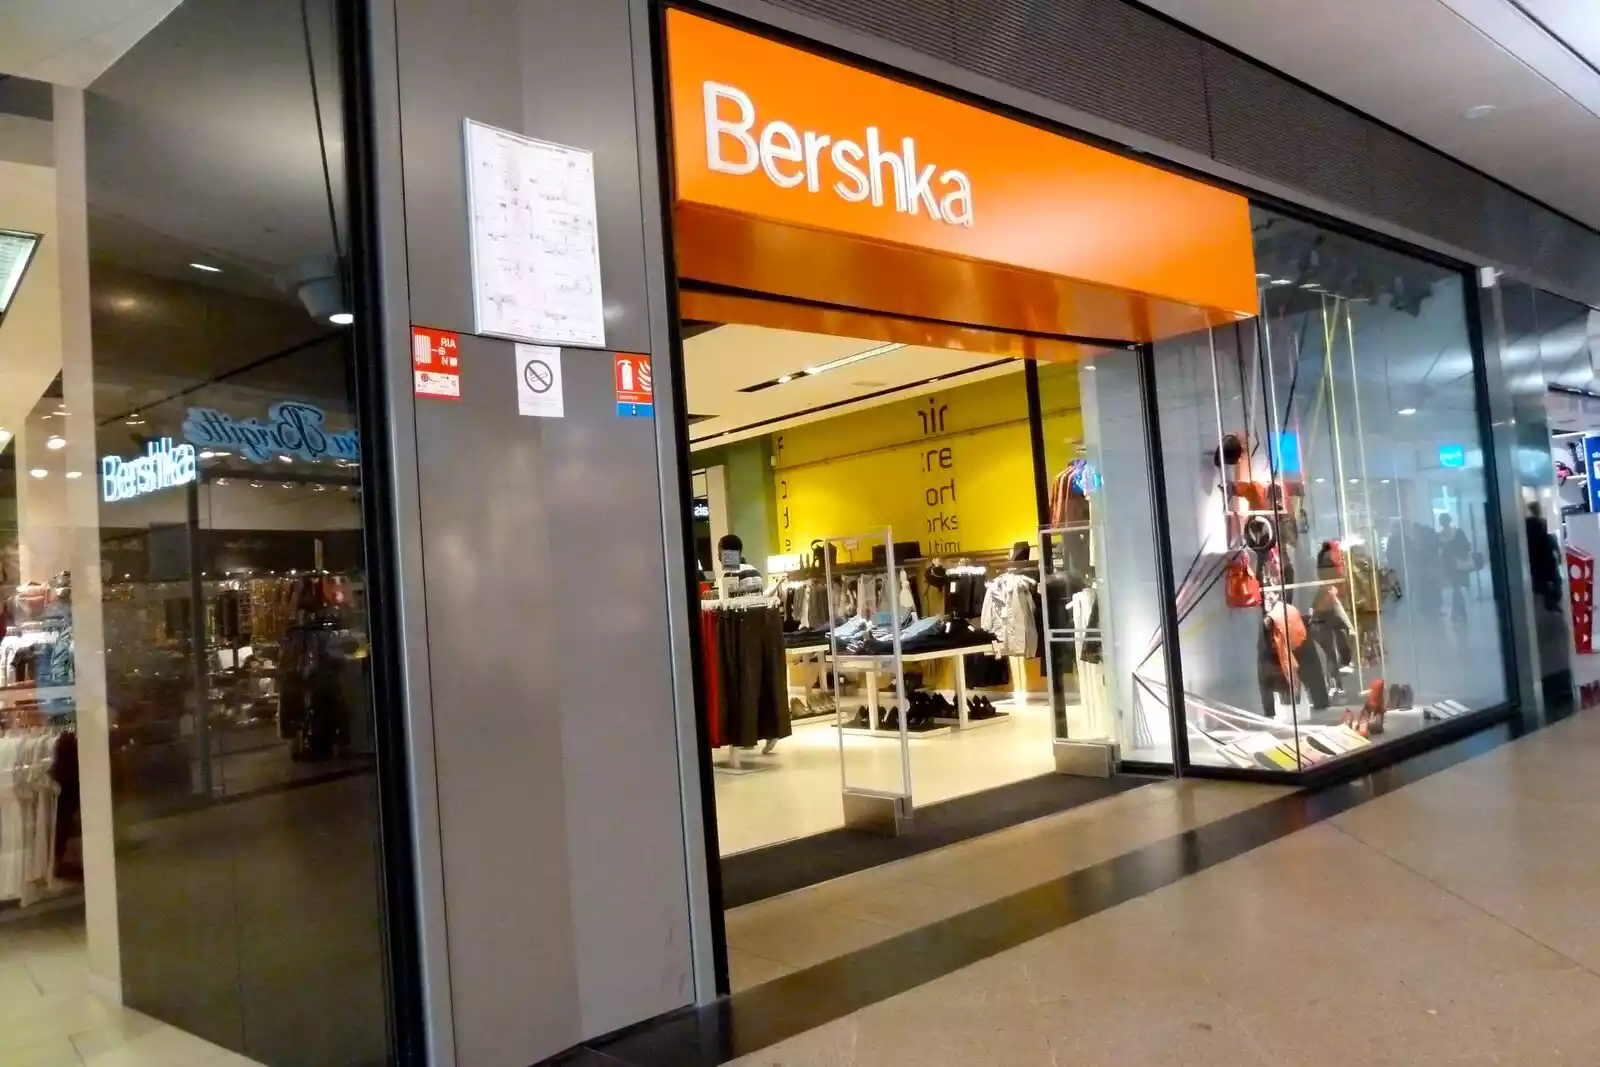 Gracias a Bershka, ahora podrás diseñar tu propia ropa